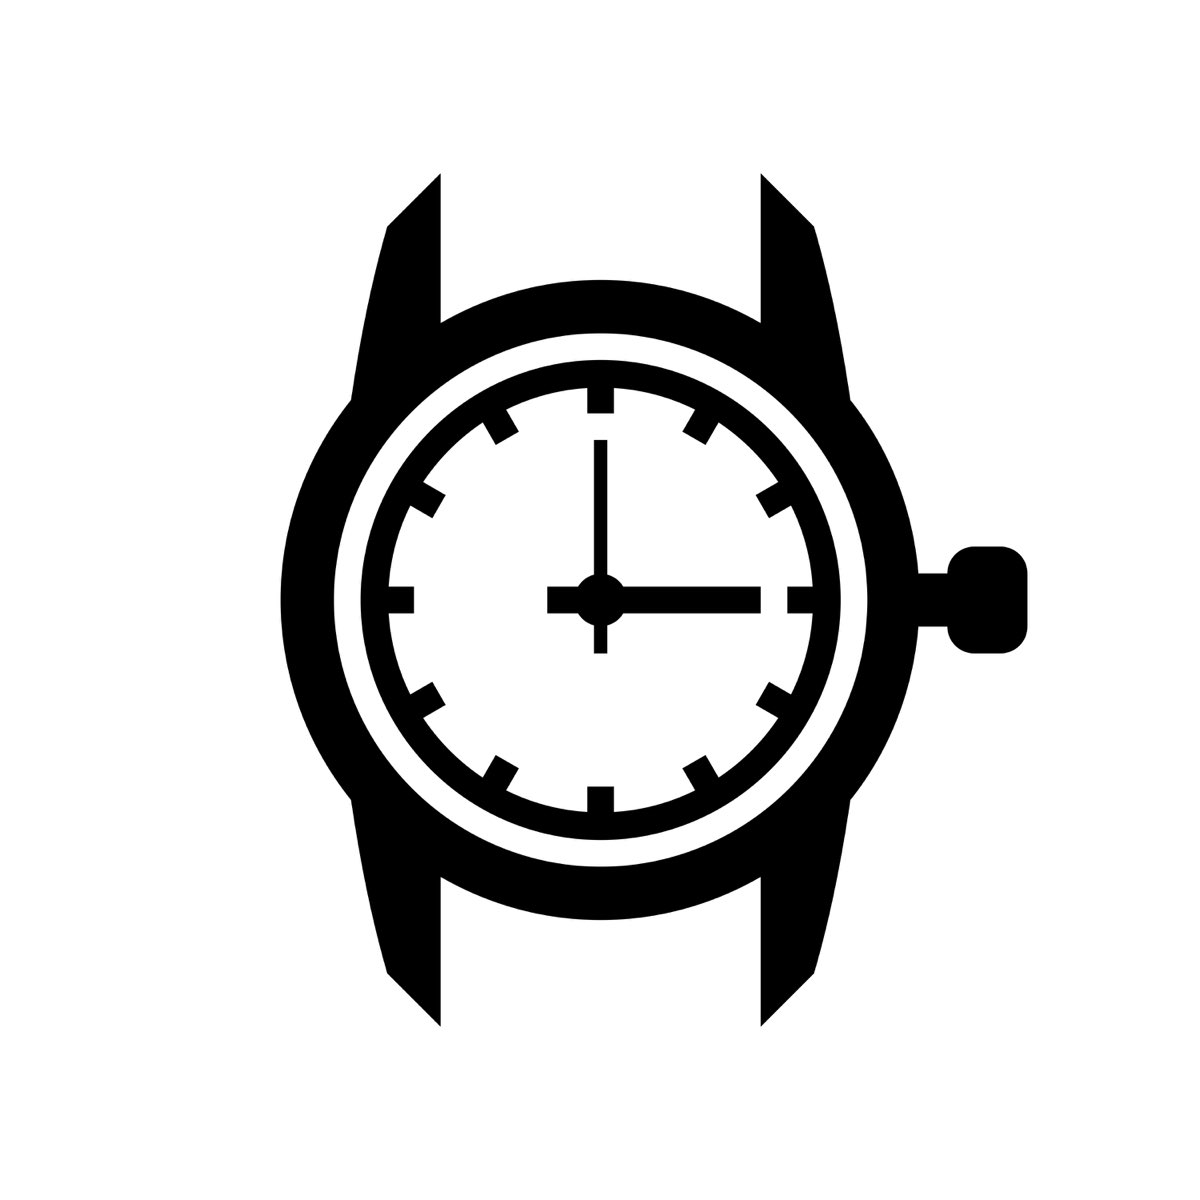 Час лого. Часы наручные вектор. Часы наручные силуэт. Часы логотип. Иконка часы наручные.